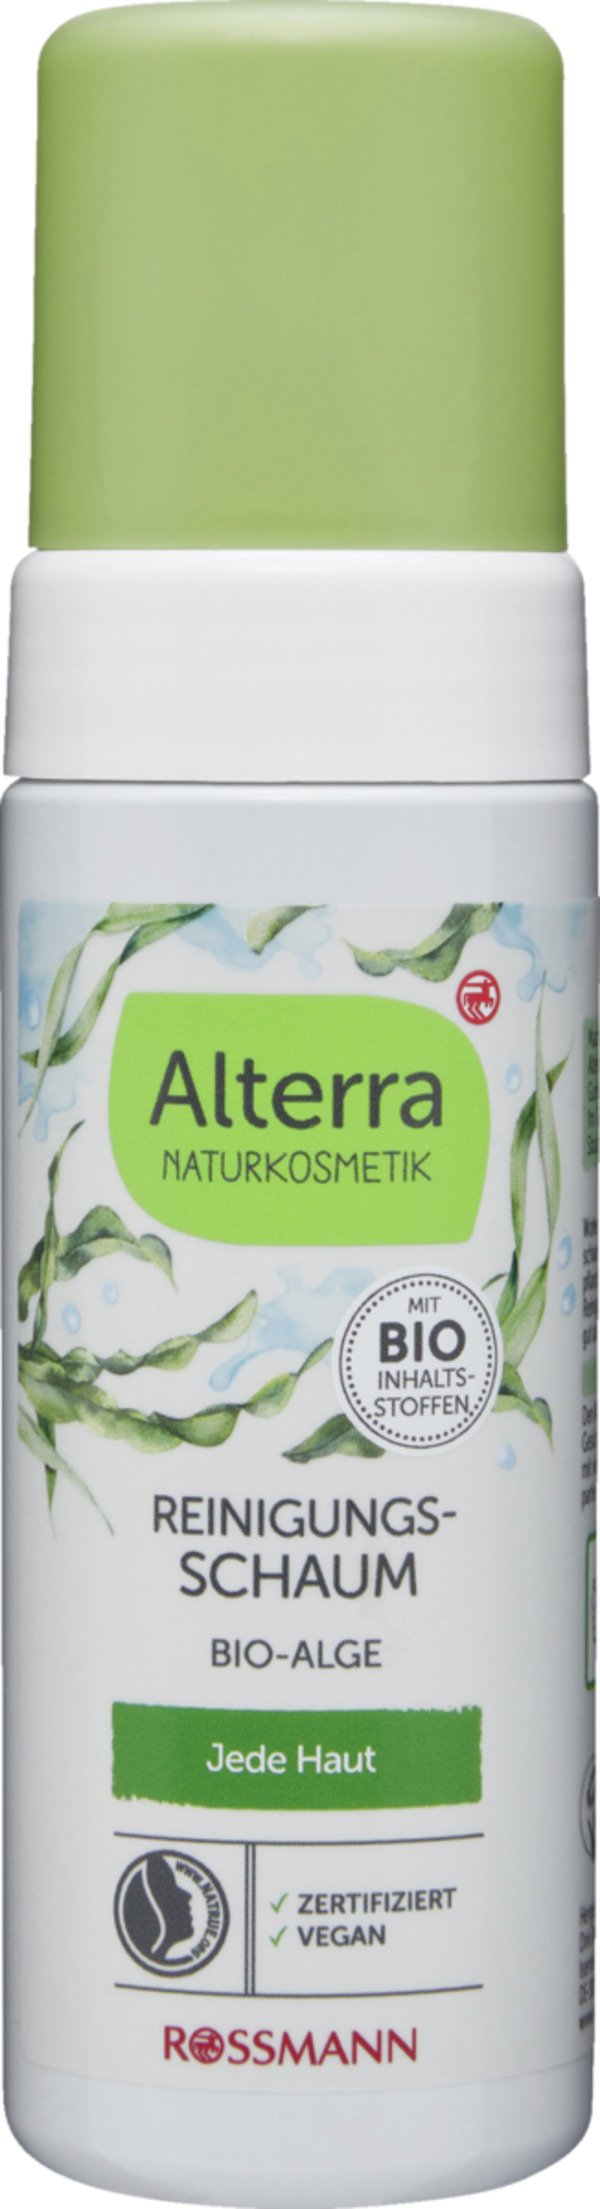 Bild 1 von Alterra NATURKOSMETIK Reinigungsschaum Bio-Alge